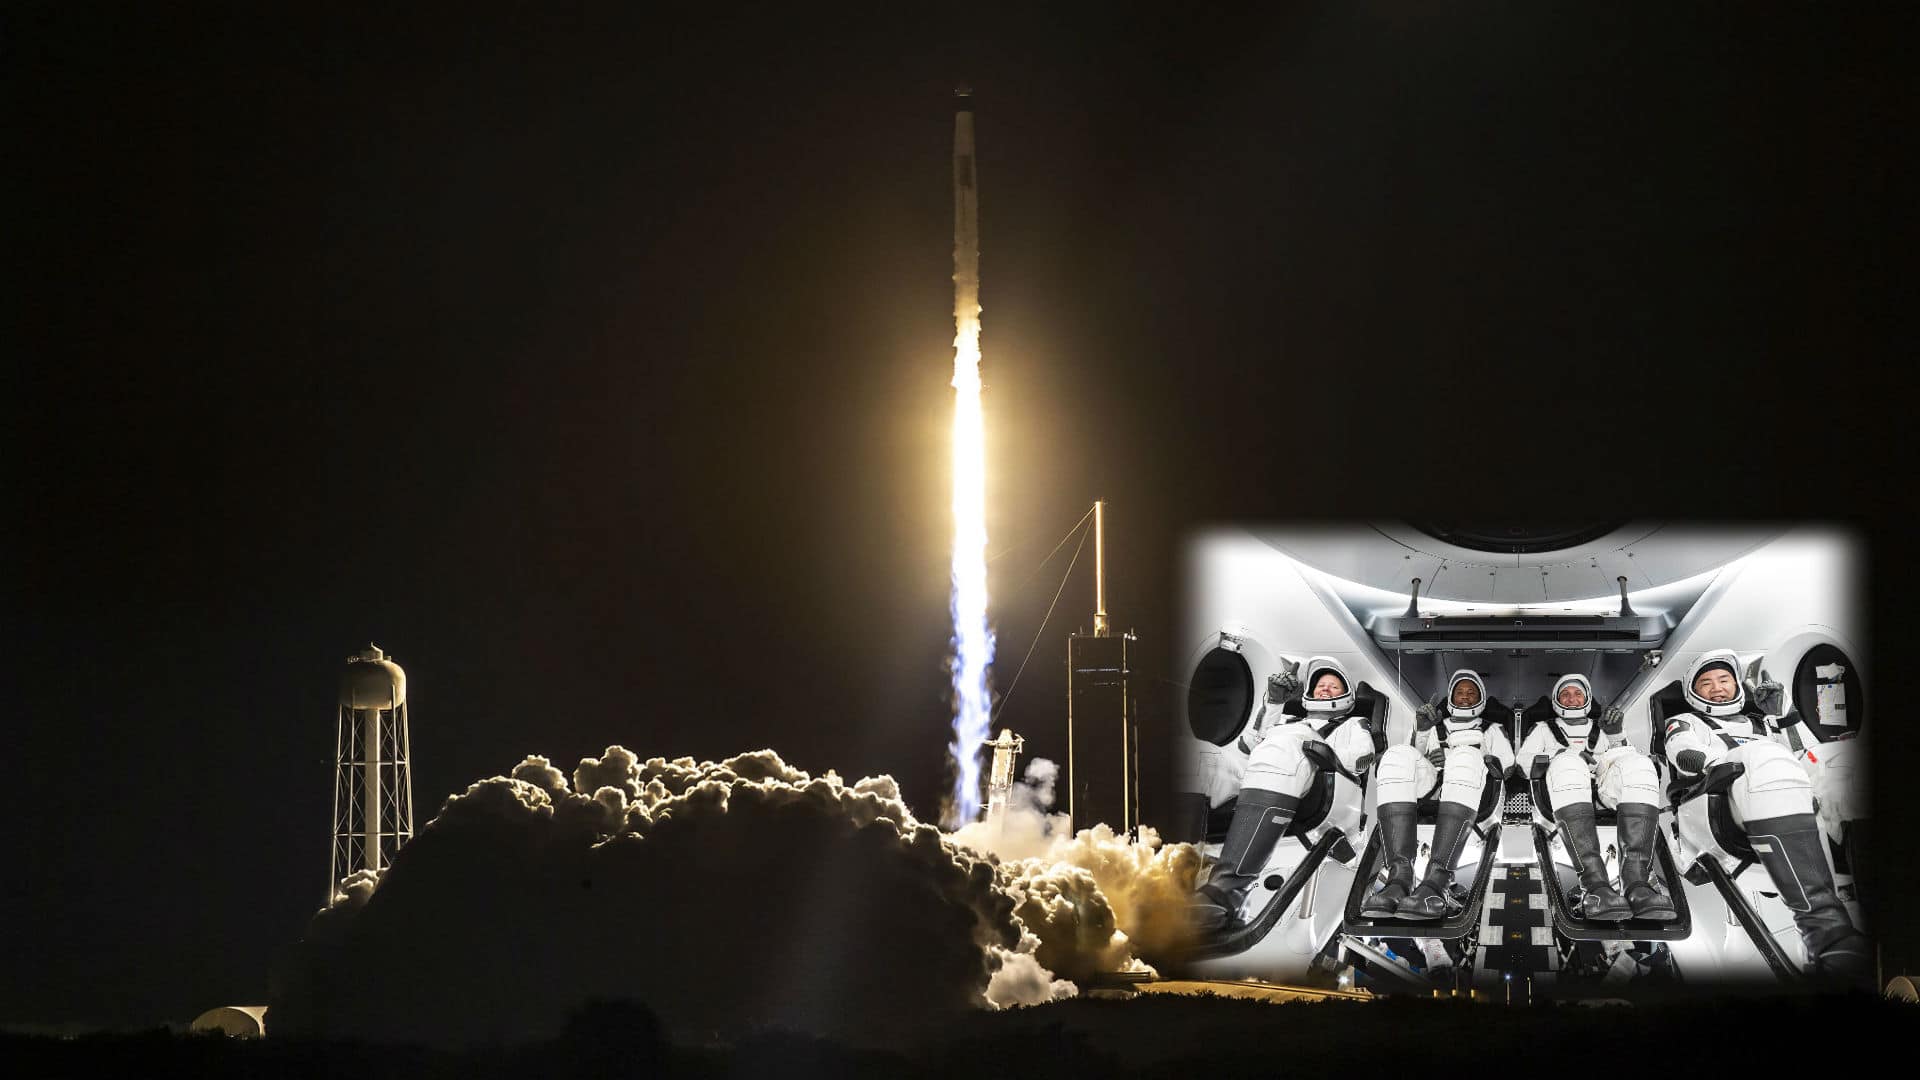 El 16 de noviembre, la cuarta y última misión tripulada del año llevó a 4 astronautas (por primera vez en una *cápsula* espacial) a la ISS. A bordo de la Crew Dragon "Resilience" iban los astronatas Victor Glover, Shannon Walker, Michael Hopkins y Soichi Noguchi. [SpaceX]